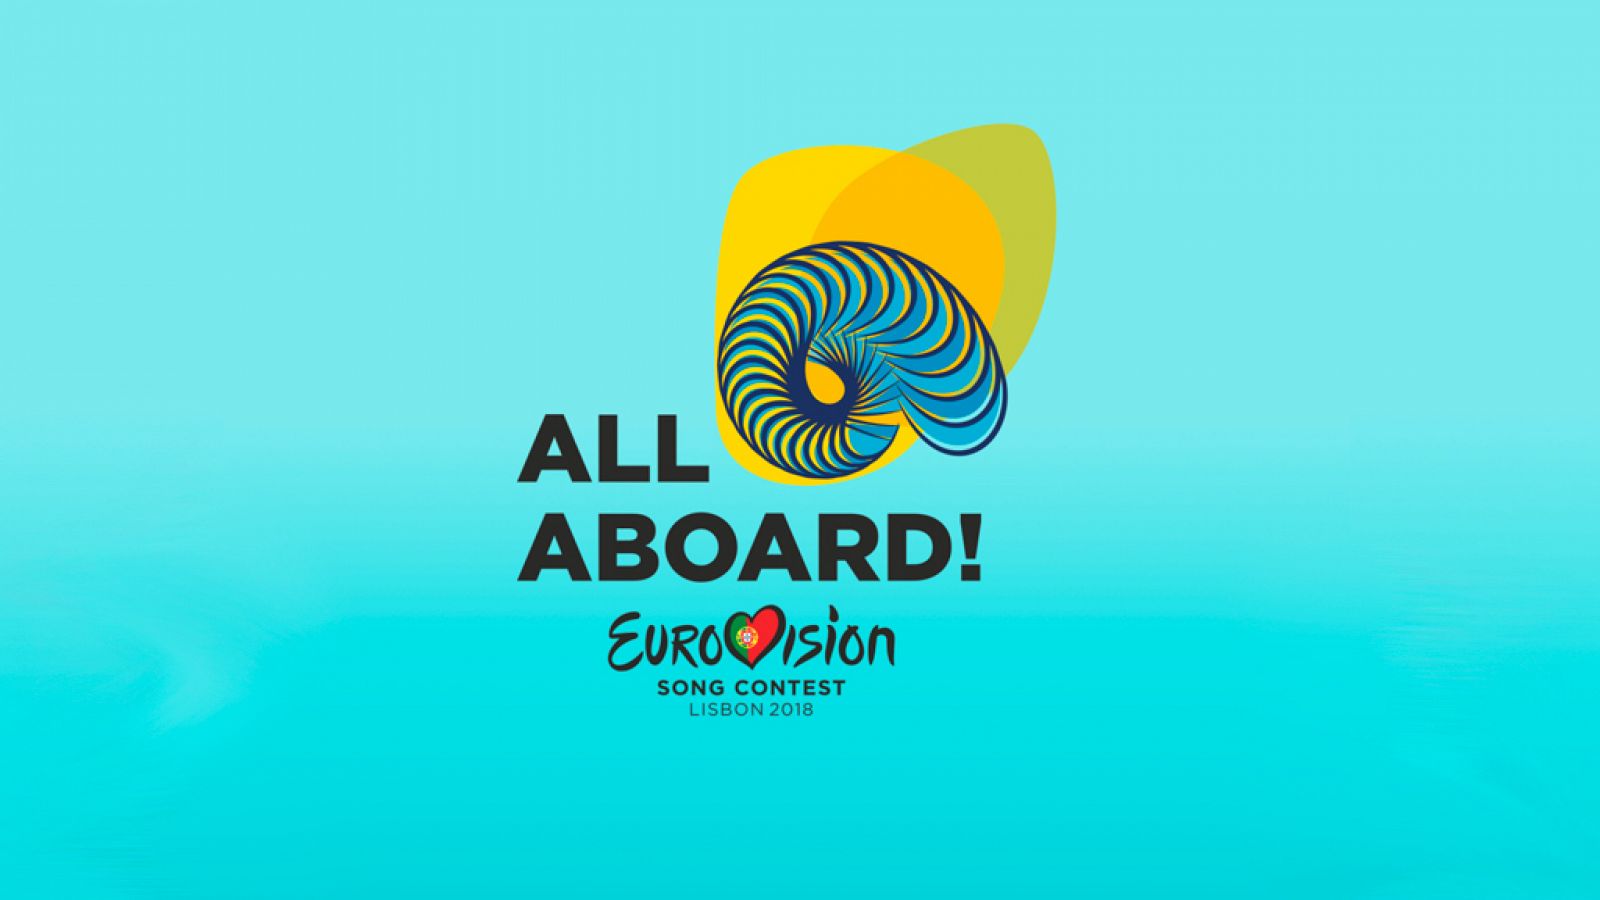 Eurovisión 2018: Portugal se inspira en el océano para crear el logo y eslogan